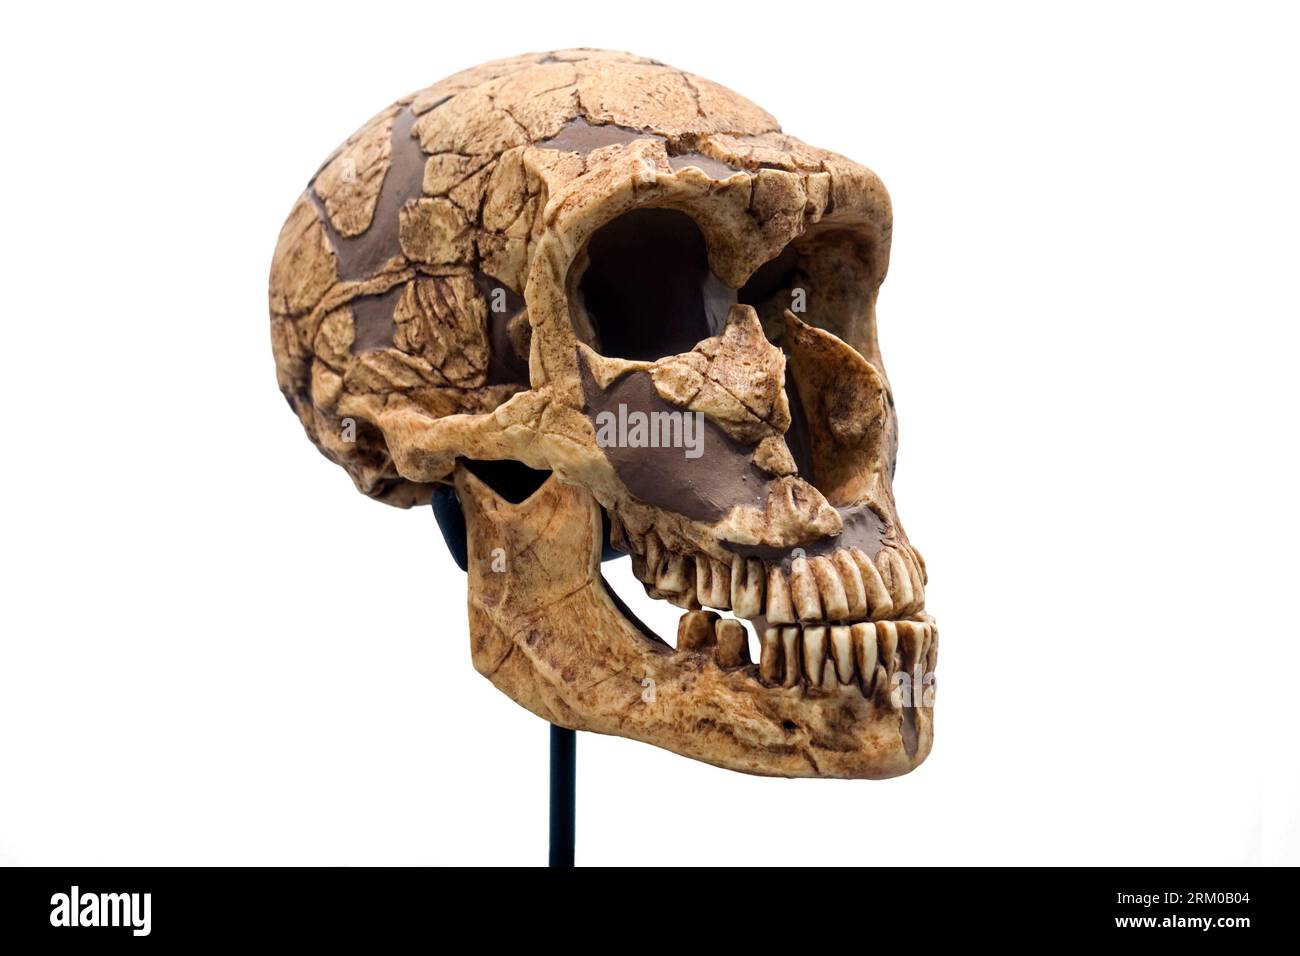 Réplique du crâne de Homo neanderthalensis / Neanderthal, espèce éteinte d'homme archaïque qui a vécu en Eurasie jusqu'à il y a environ 40 000 ans Banque D'Images